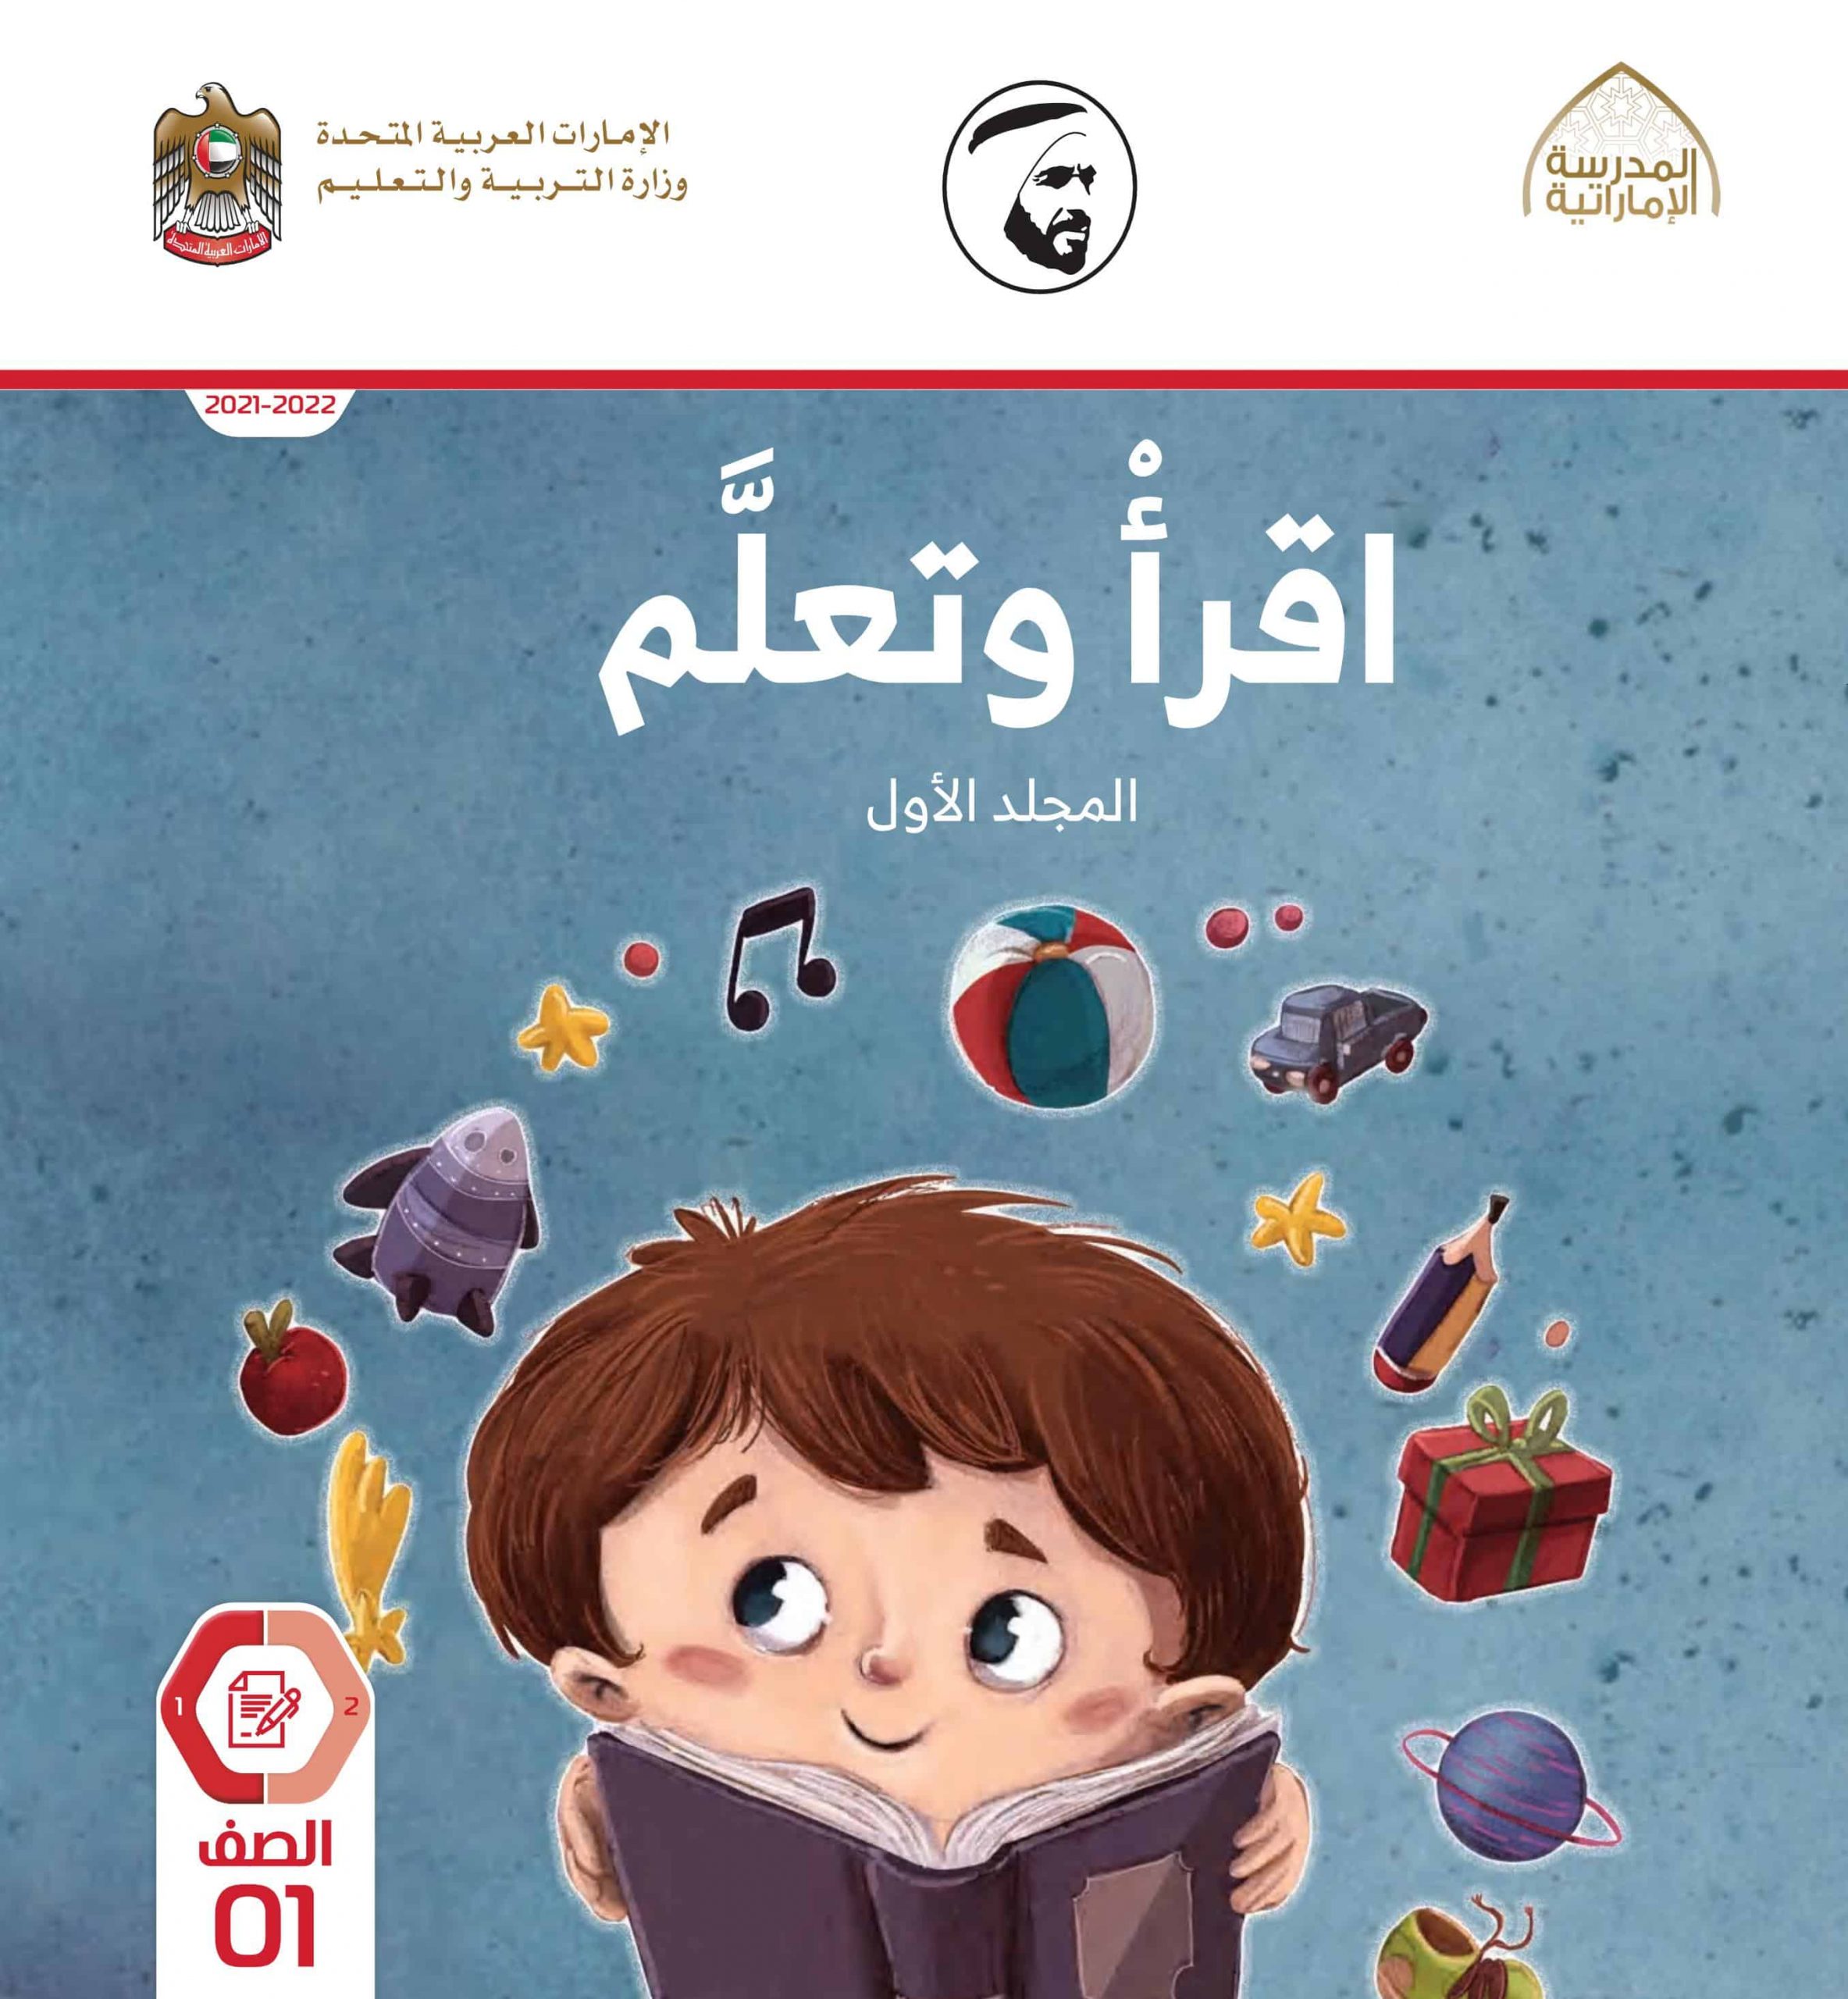 كتاب أقرأ وتعلم المجلد الأول 2021-2022 الصف الأول مادة اللغة العربية